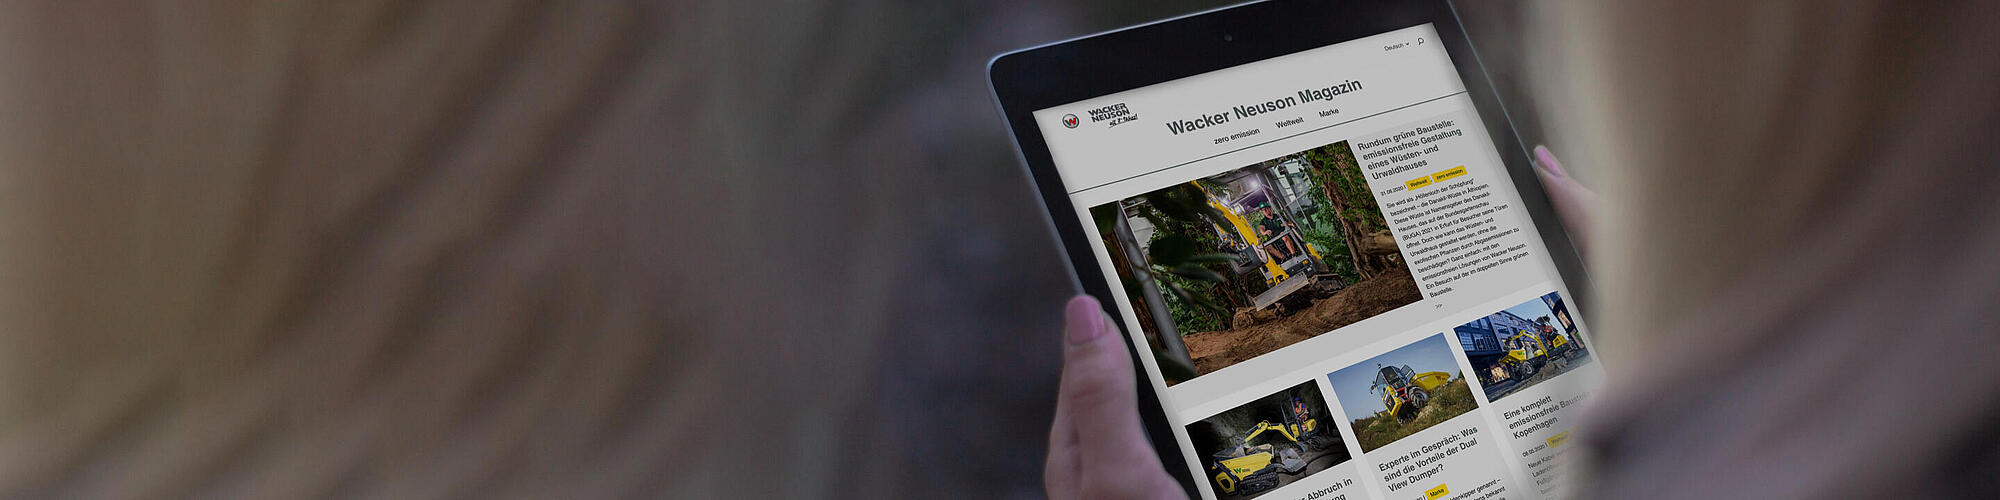 Wacker Neuson Online Magazine på en tablet.